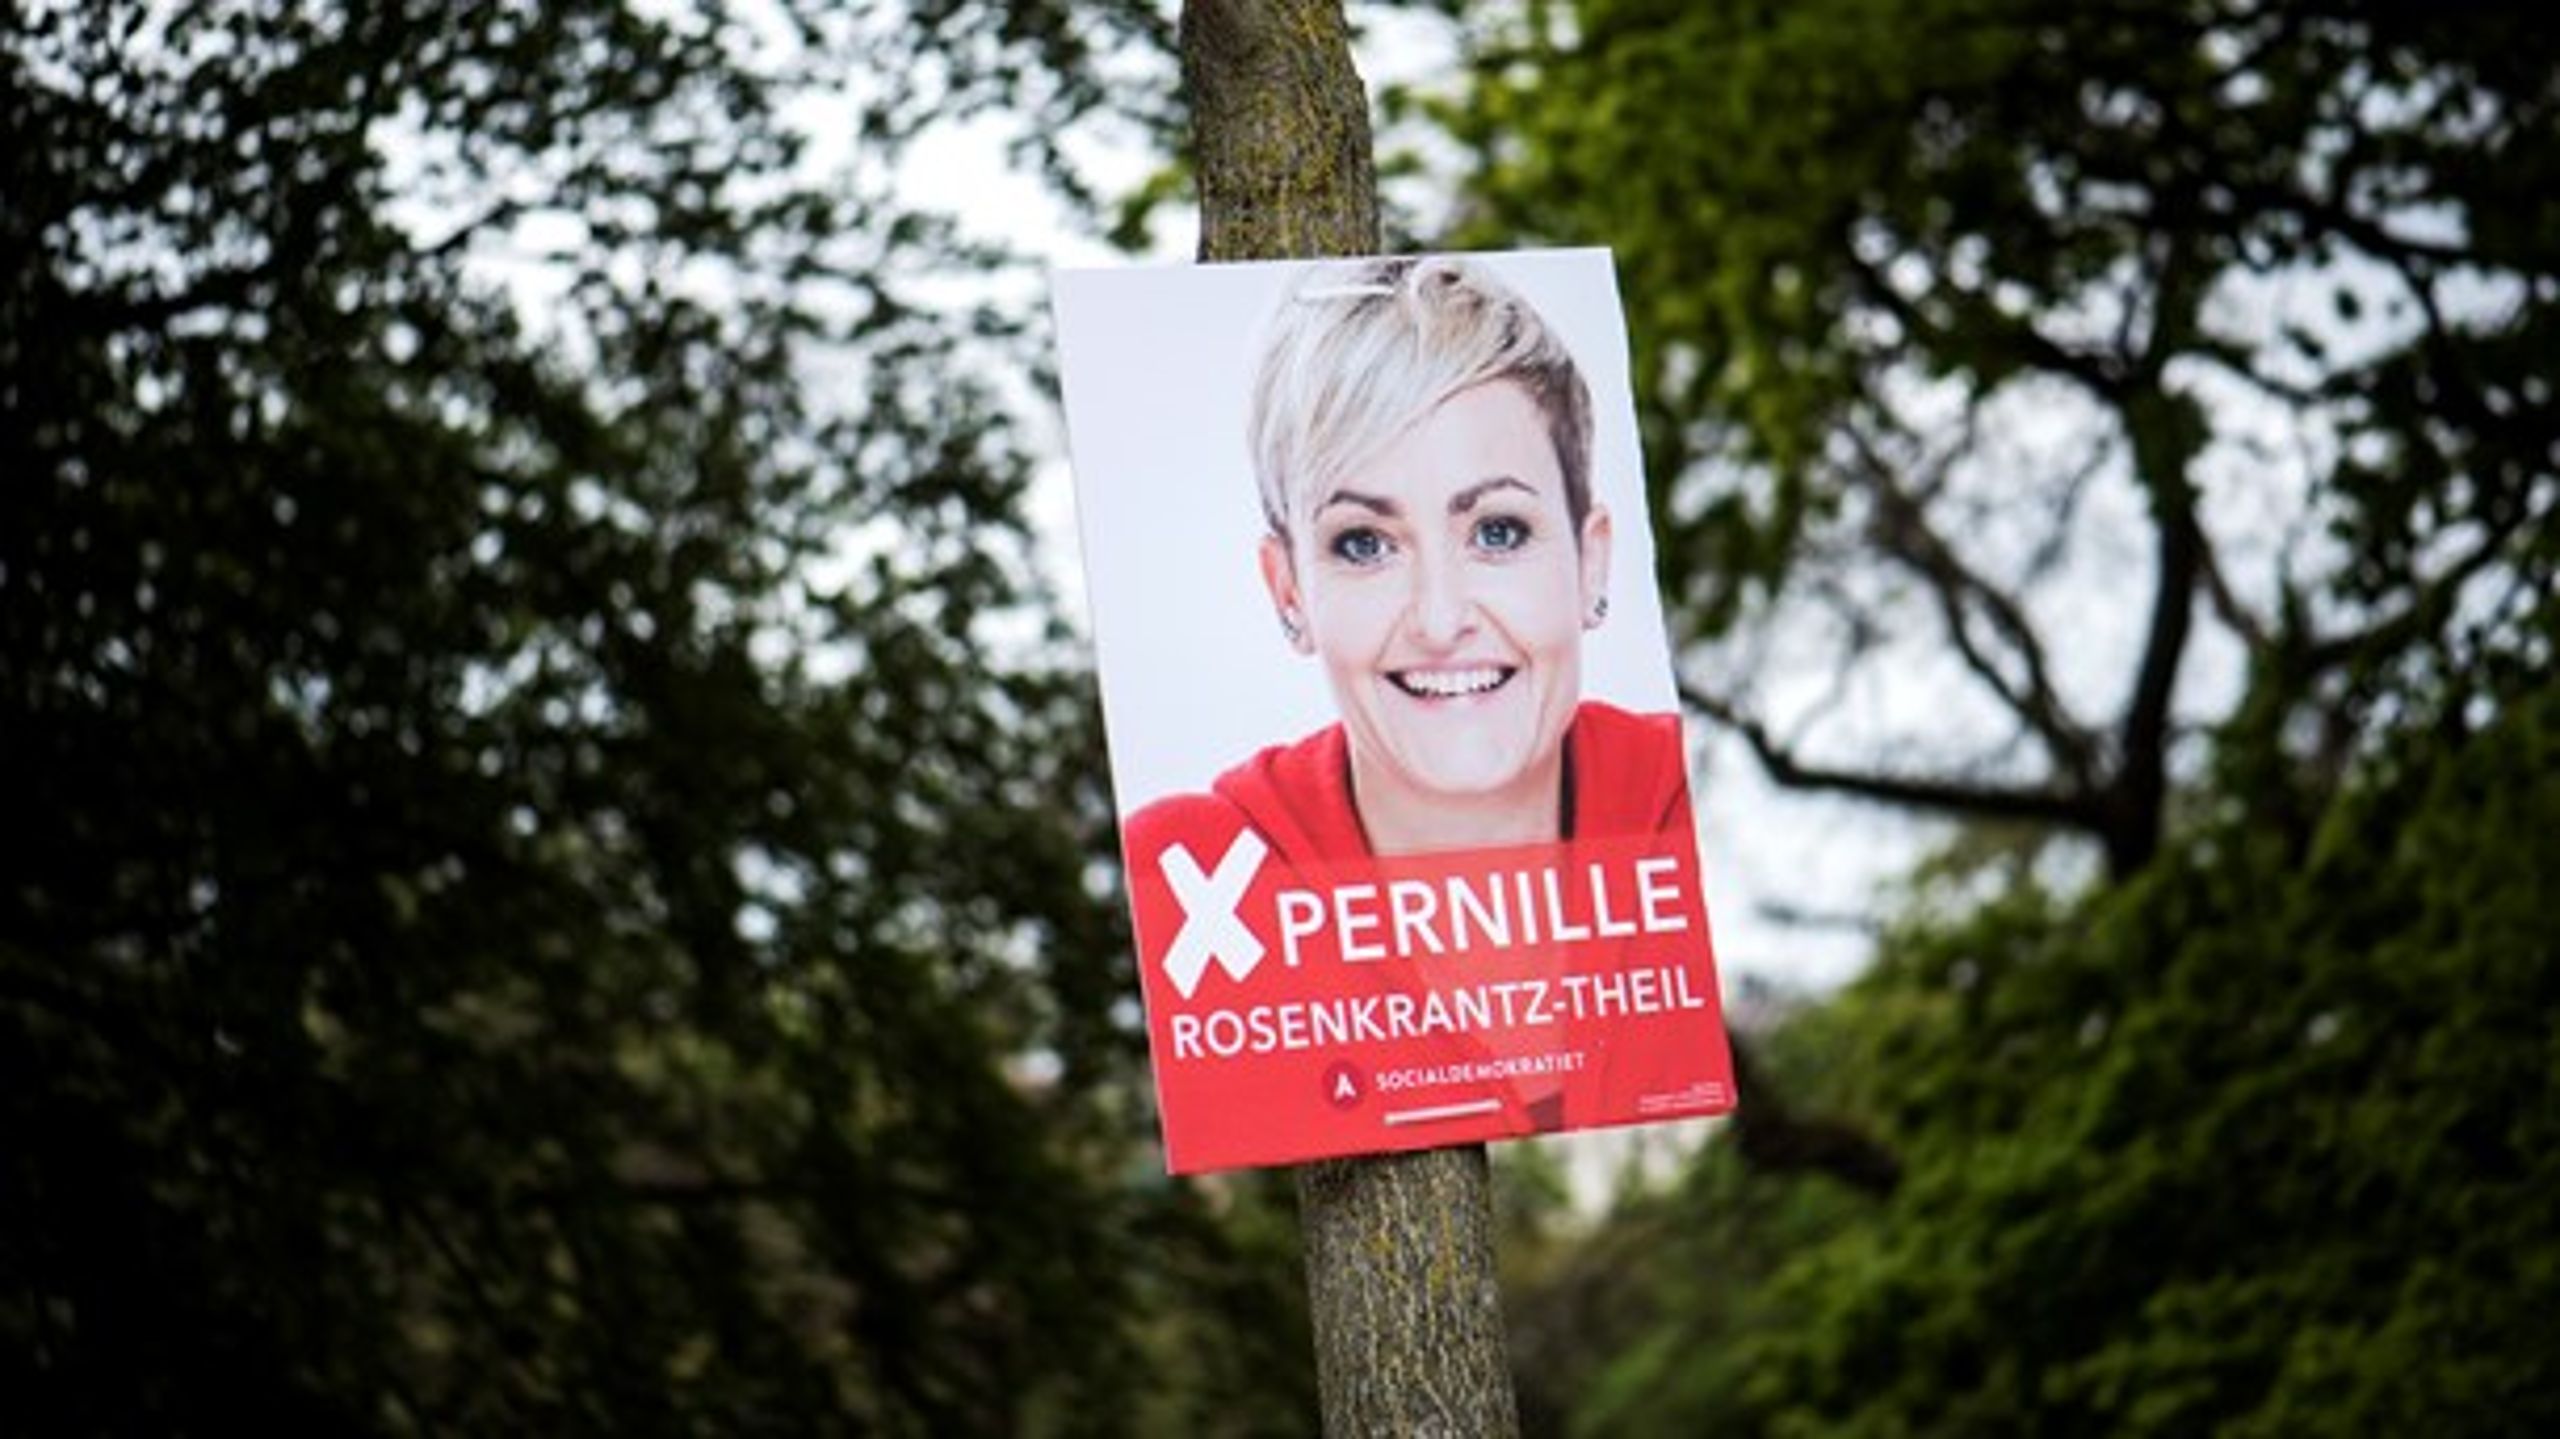 Valgplakat for Pernille Rosenkrantz-Theil fra Socialdemokratiet.